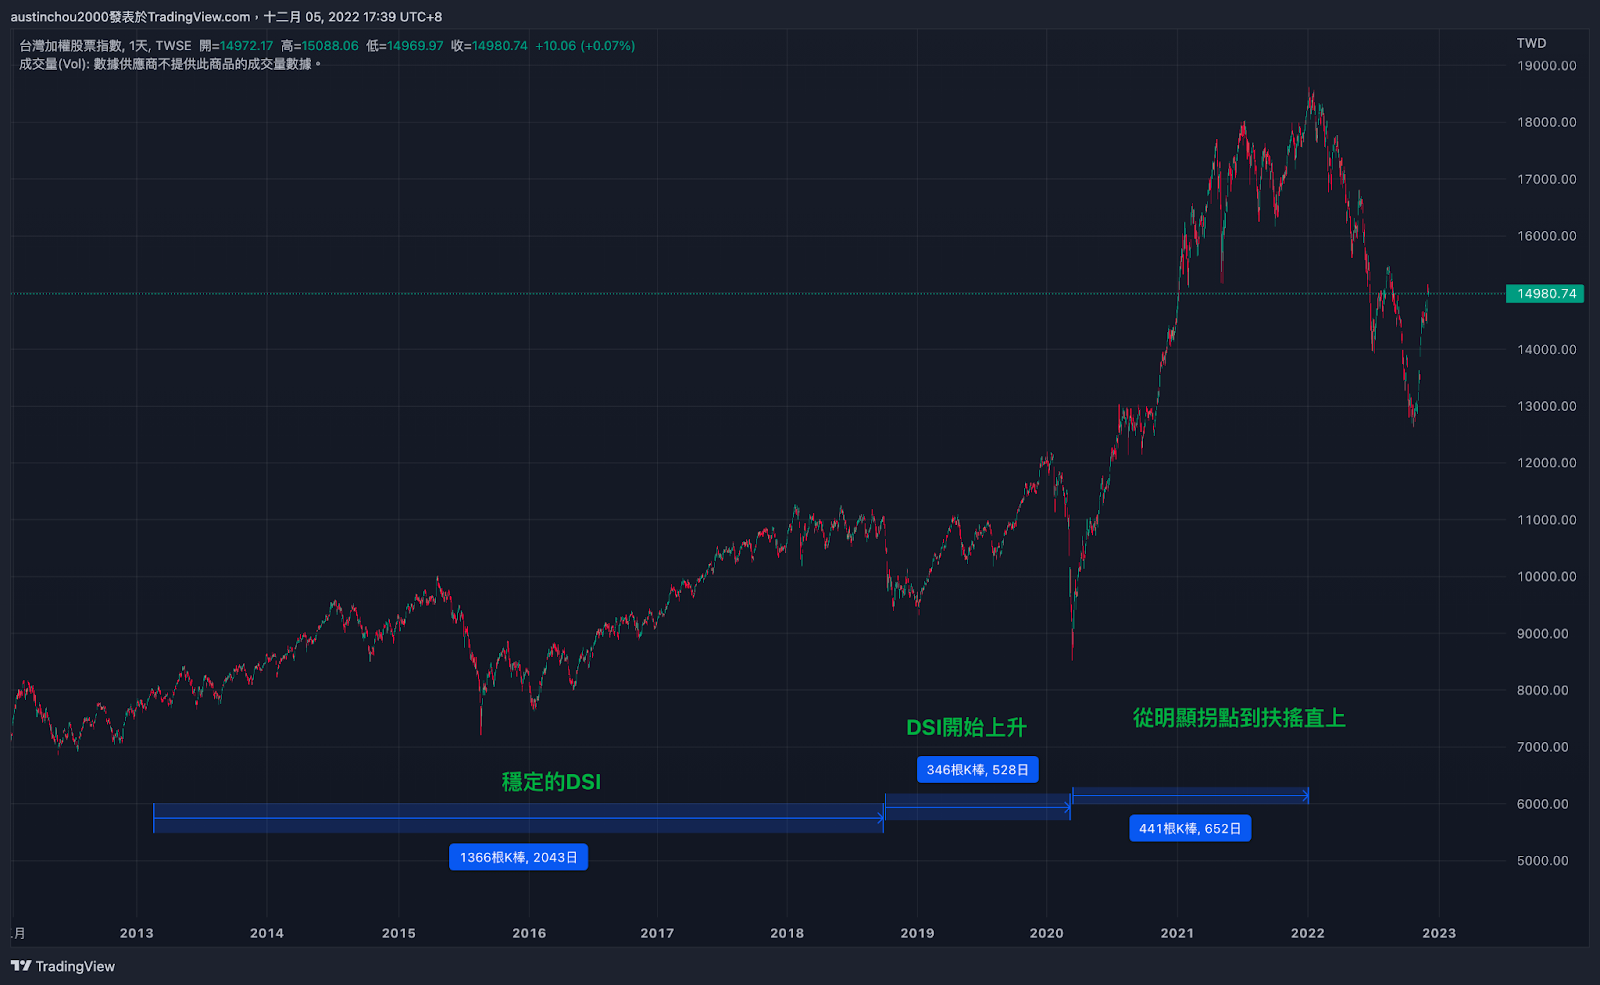 台股庫存量 DSI (平均銷貨天數) 來辨別市場牛熊狀態